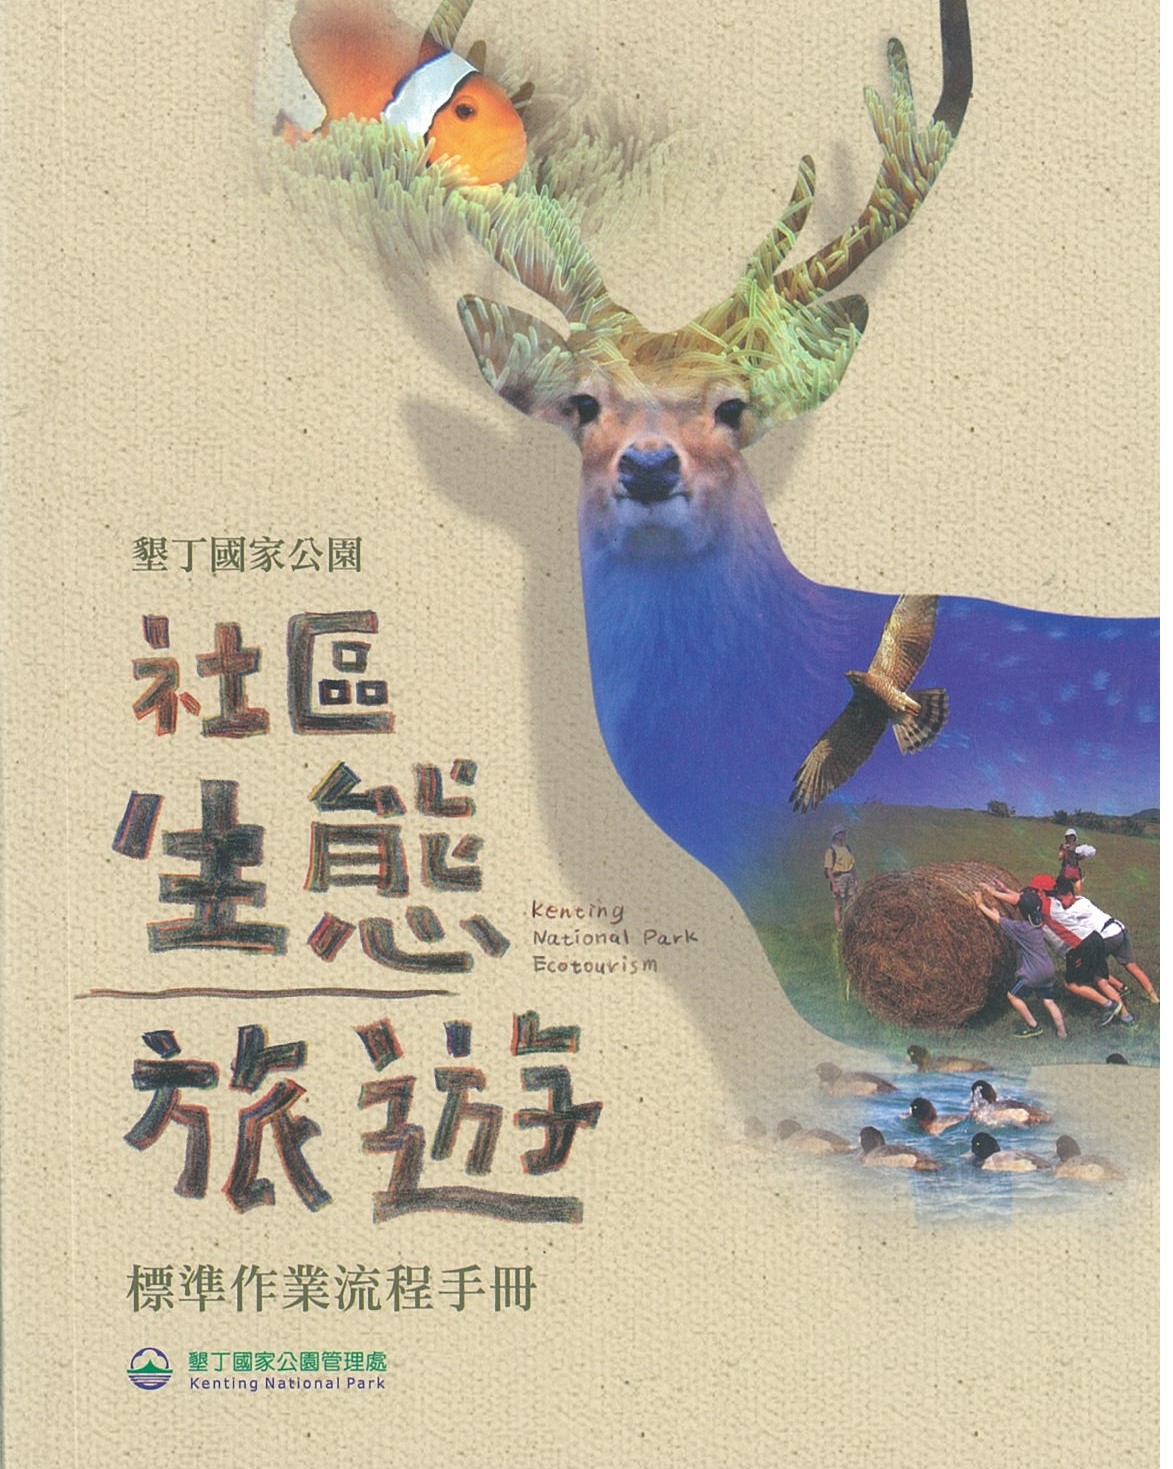 墾丁國家公園社區生態旅遊標準作業流程手冊